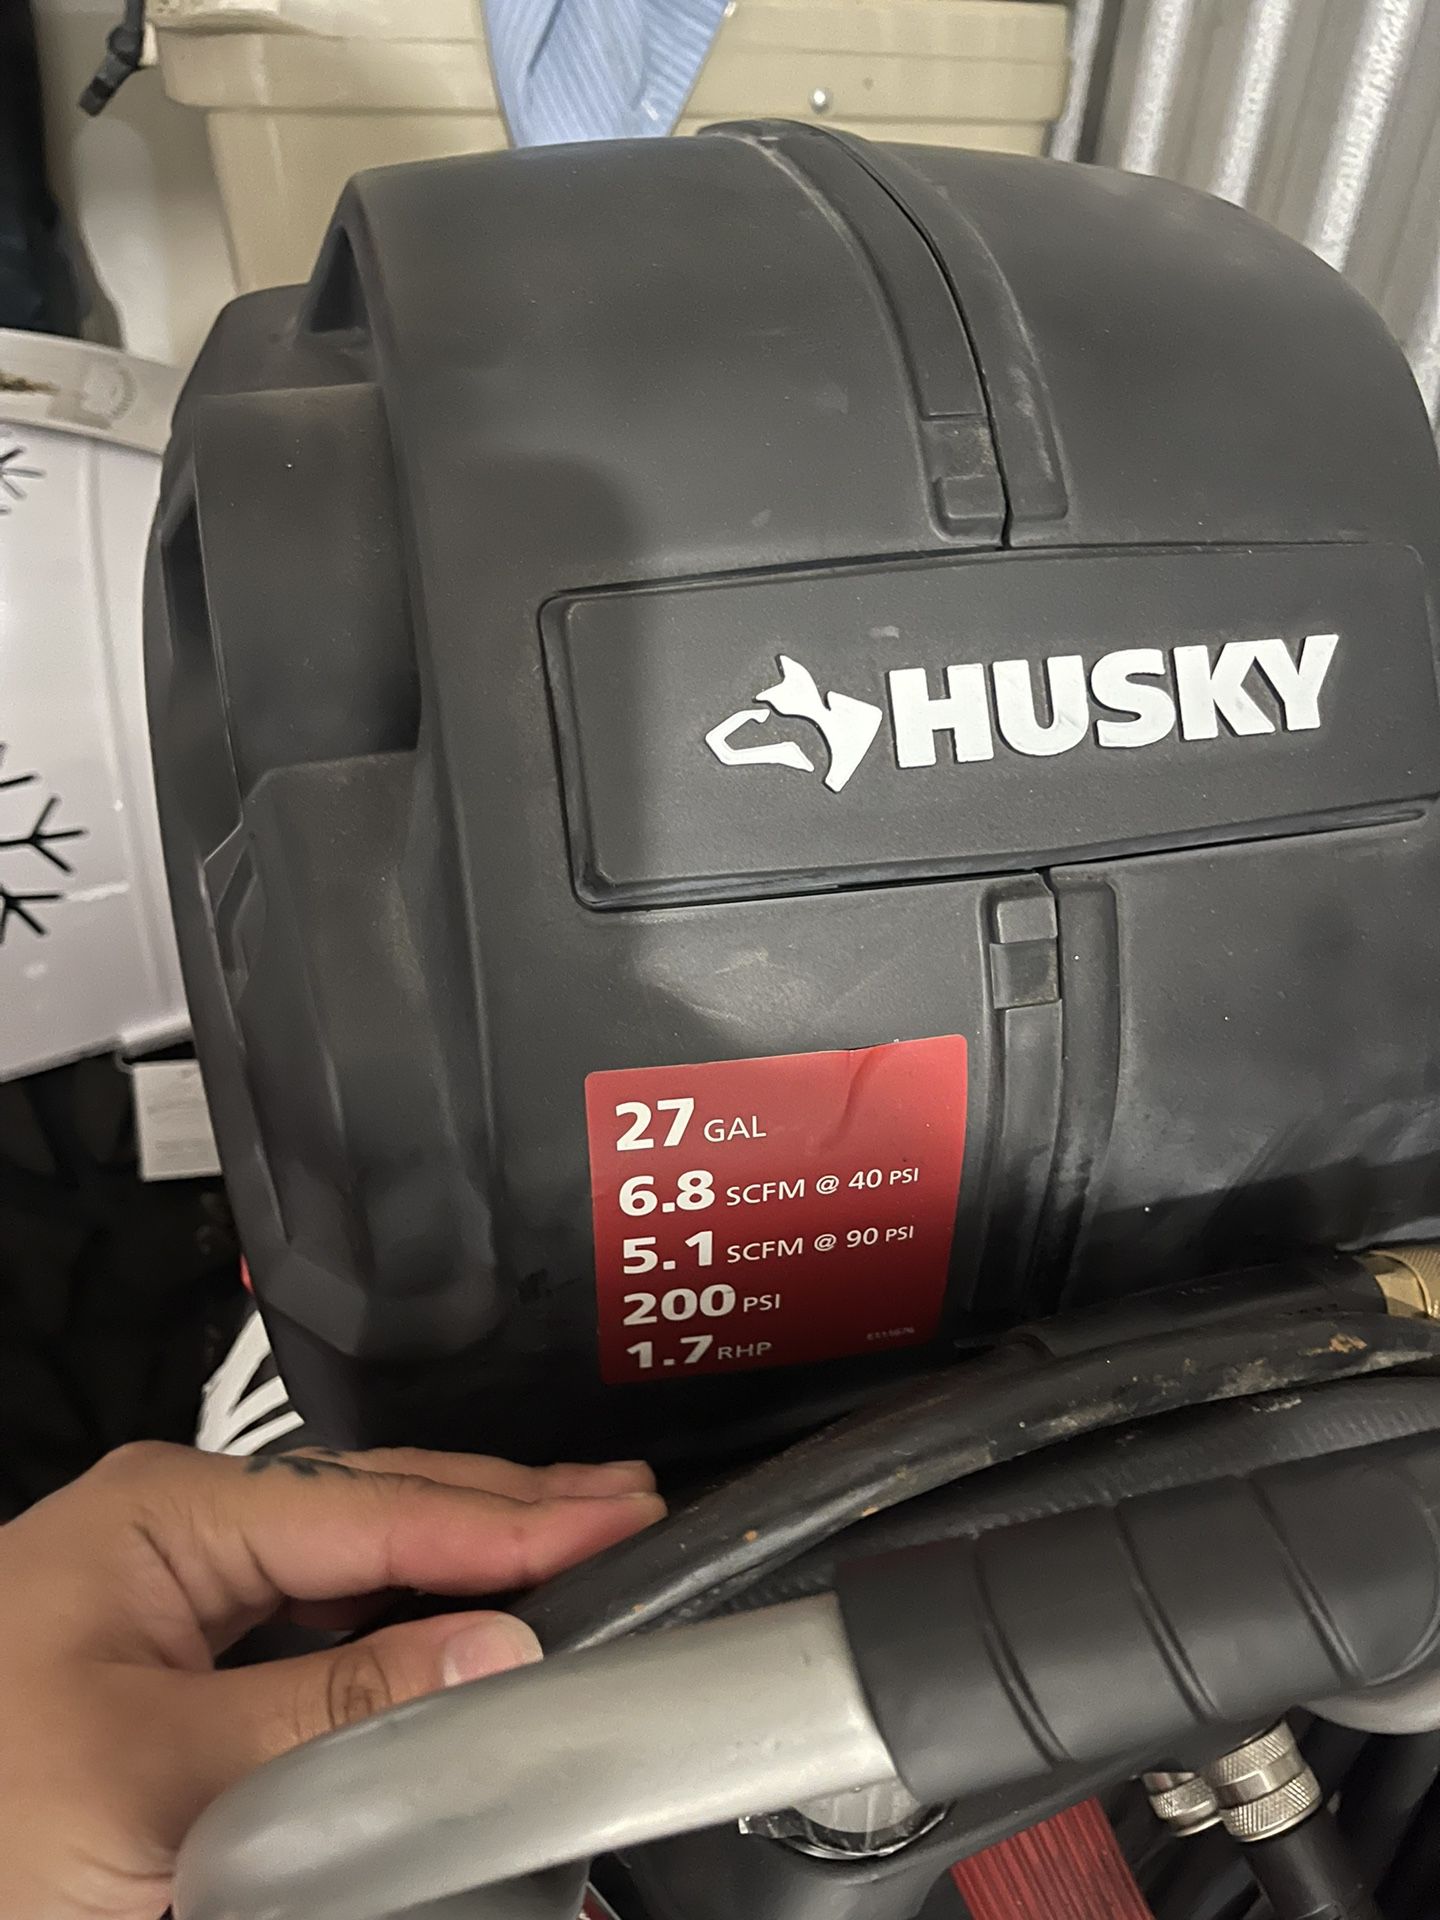 Husky Air Compressor 